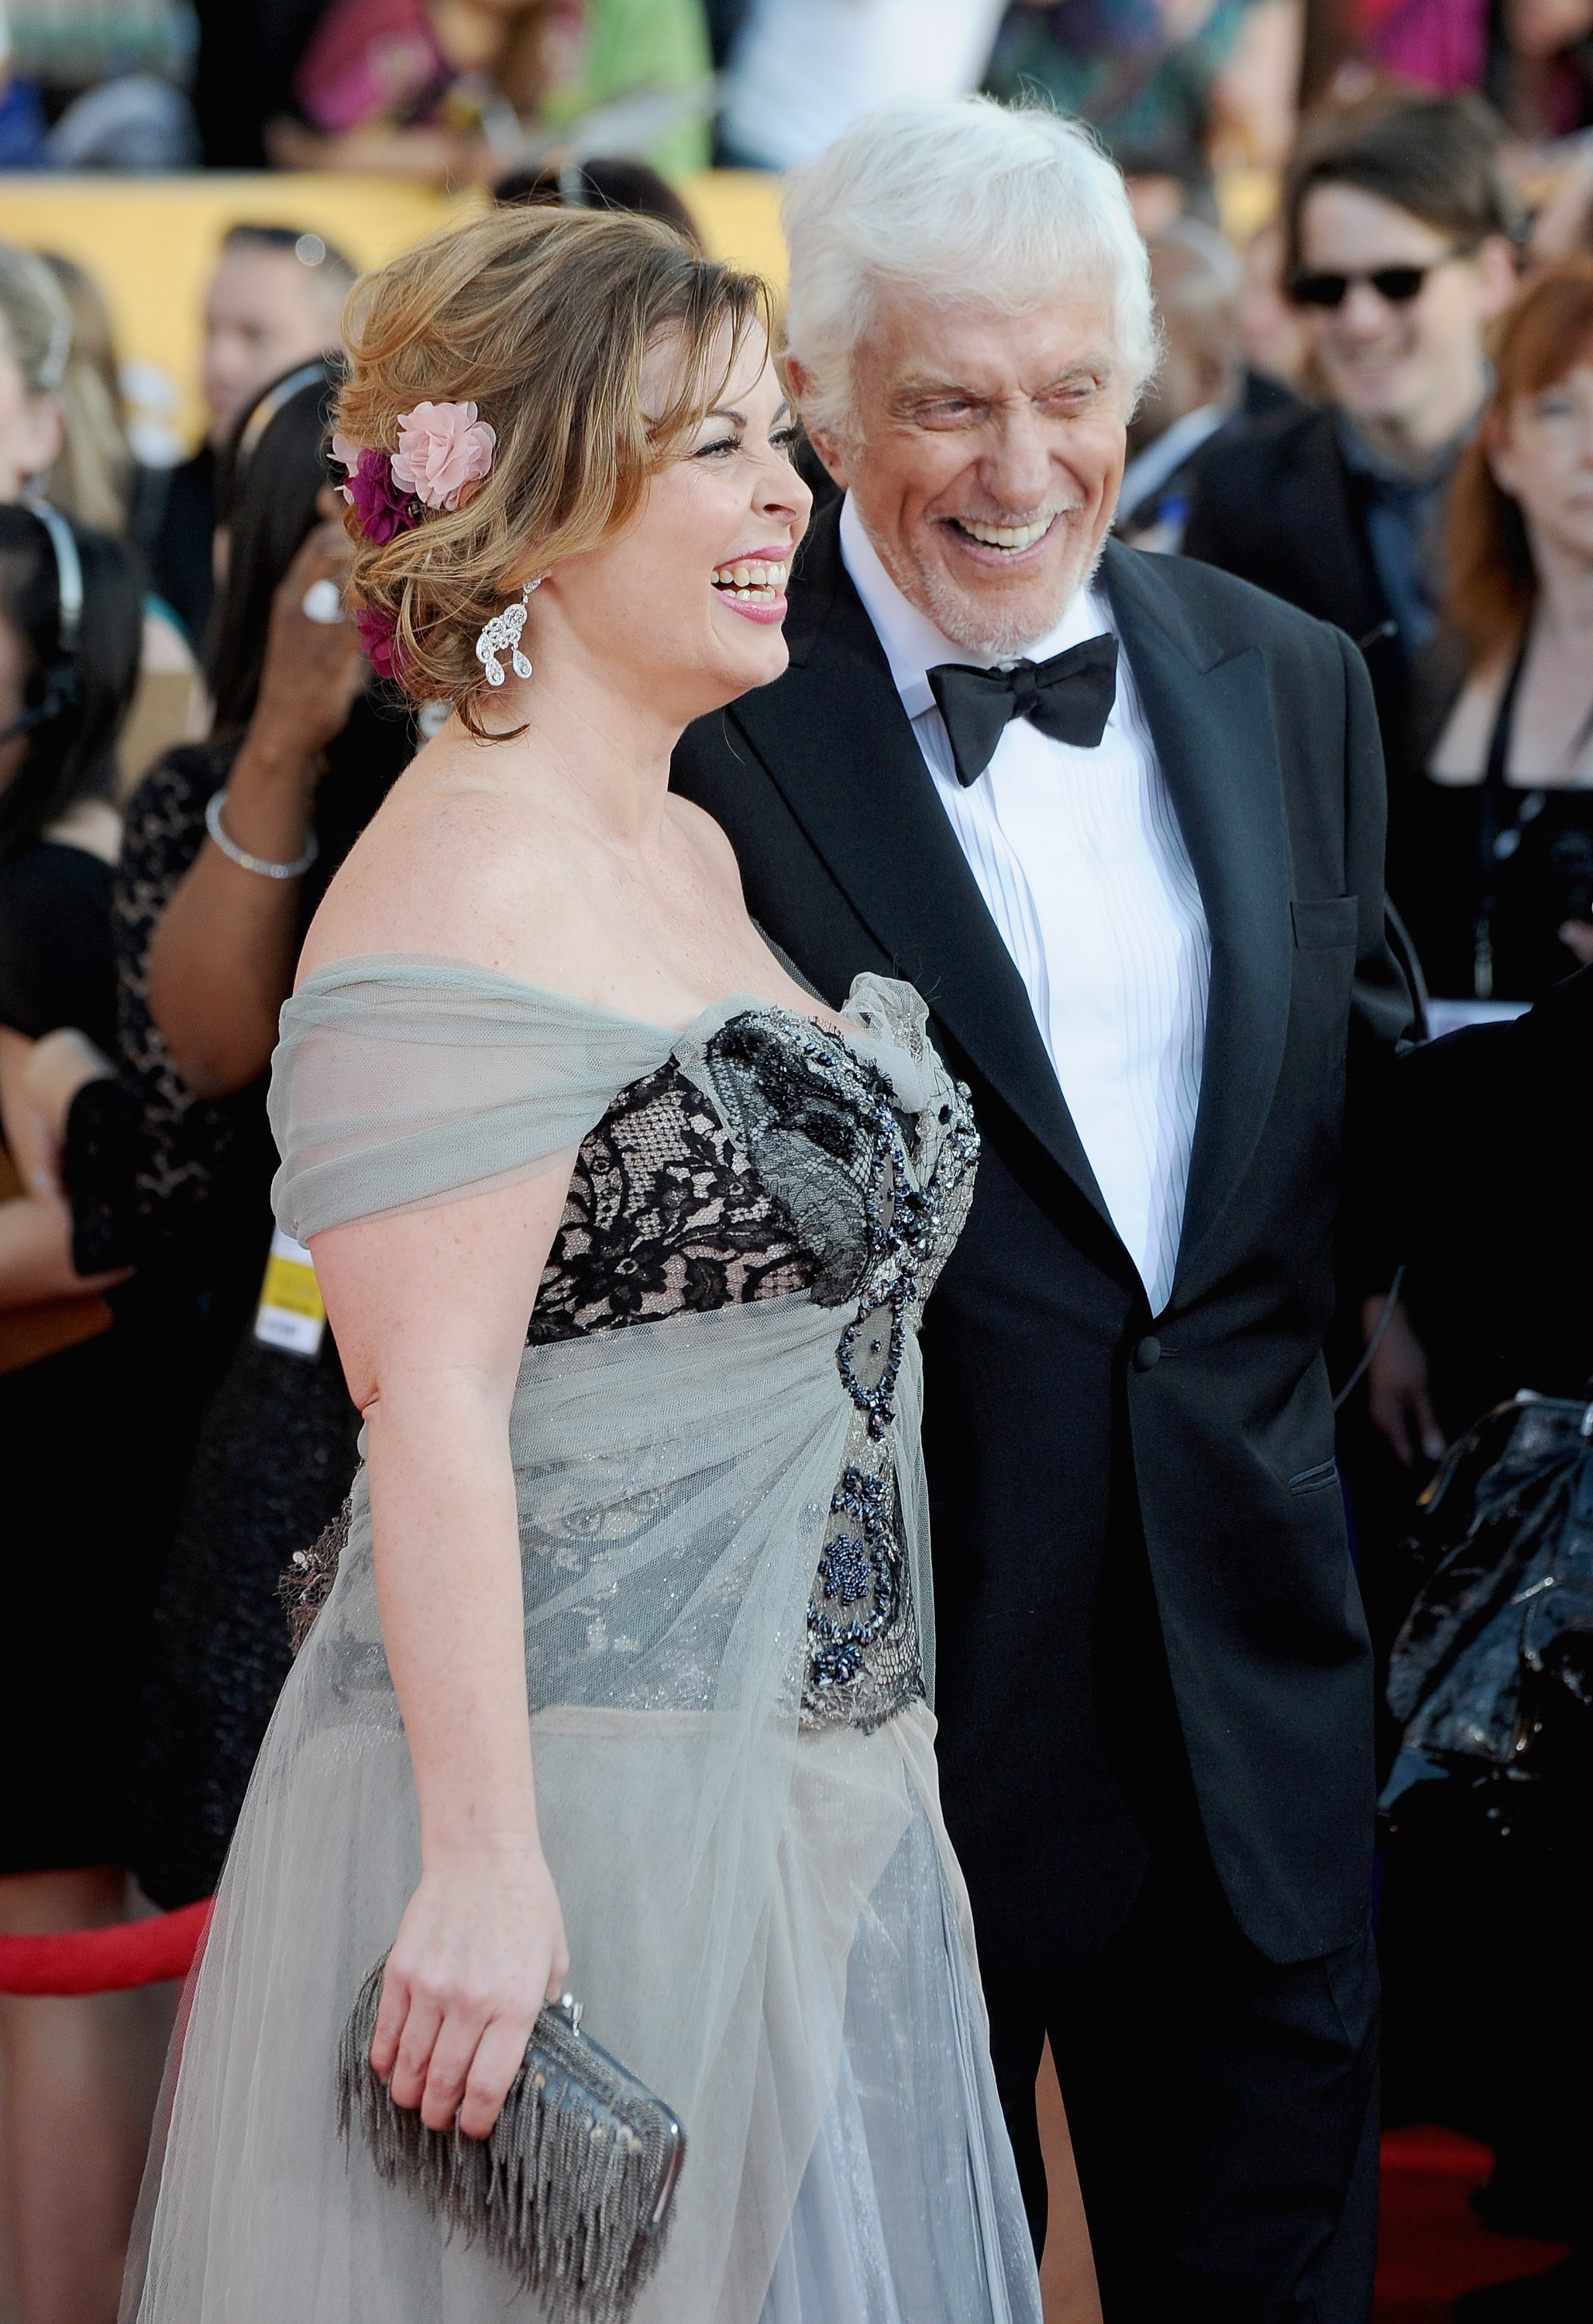 Dick Van Dyke and Arlene Silver in 2012